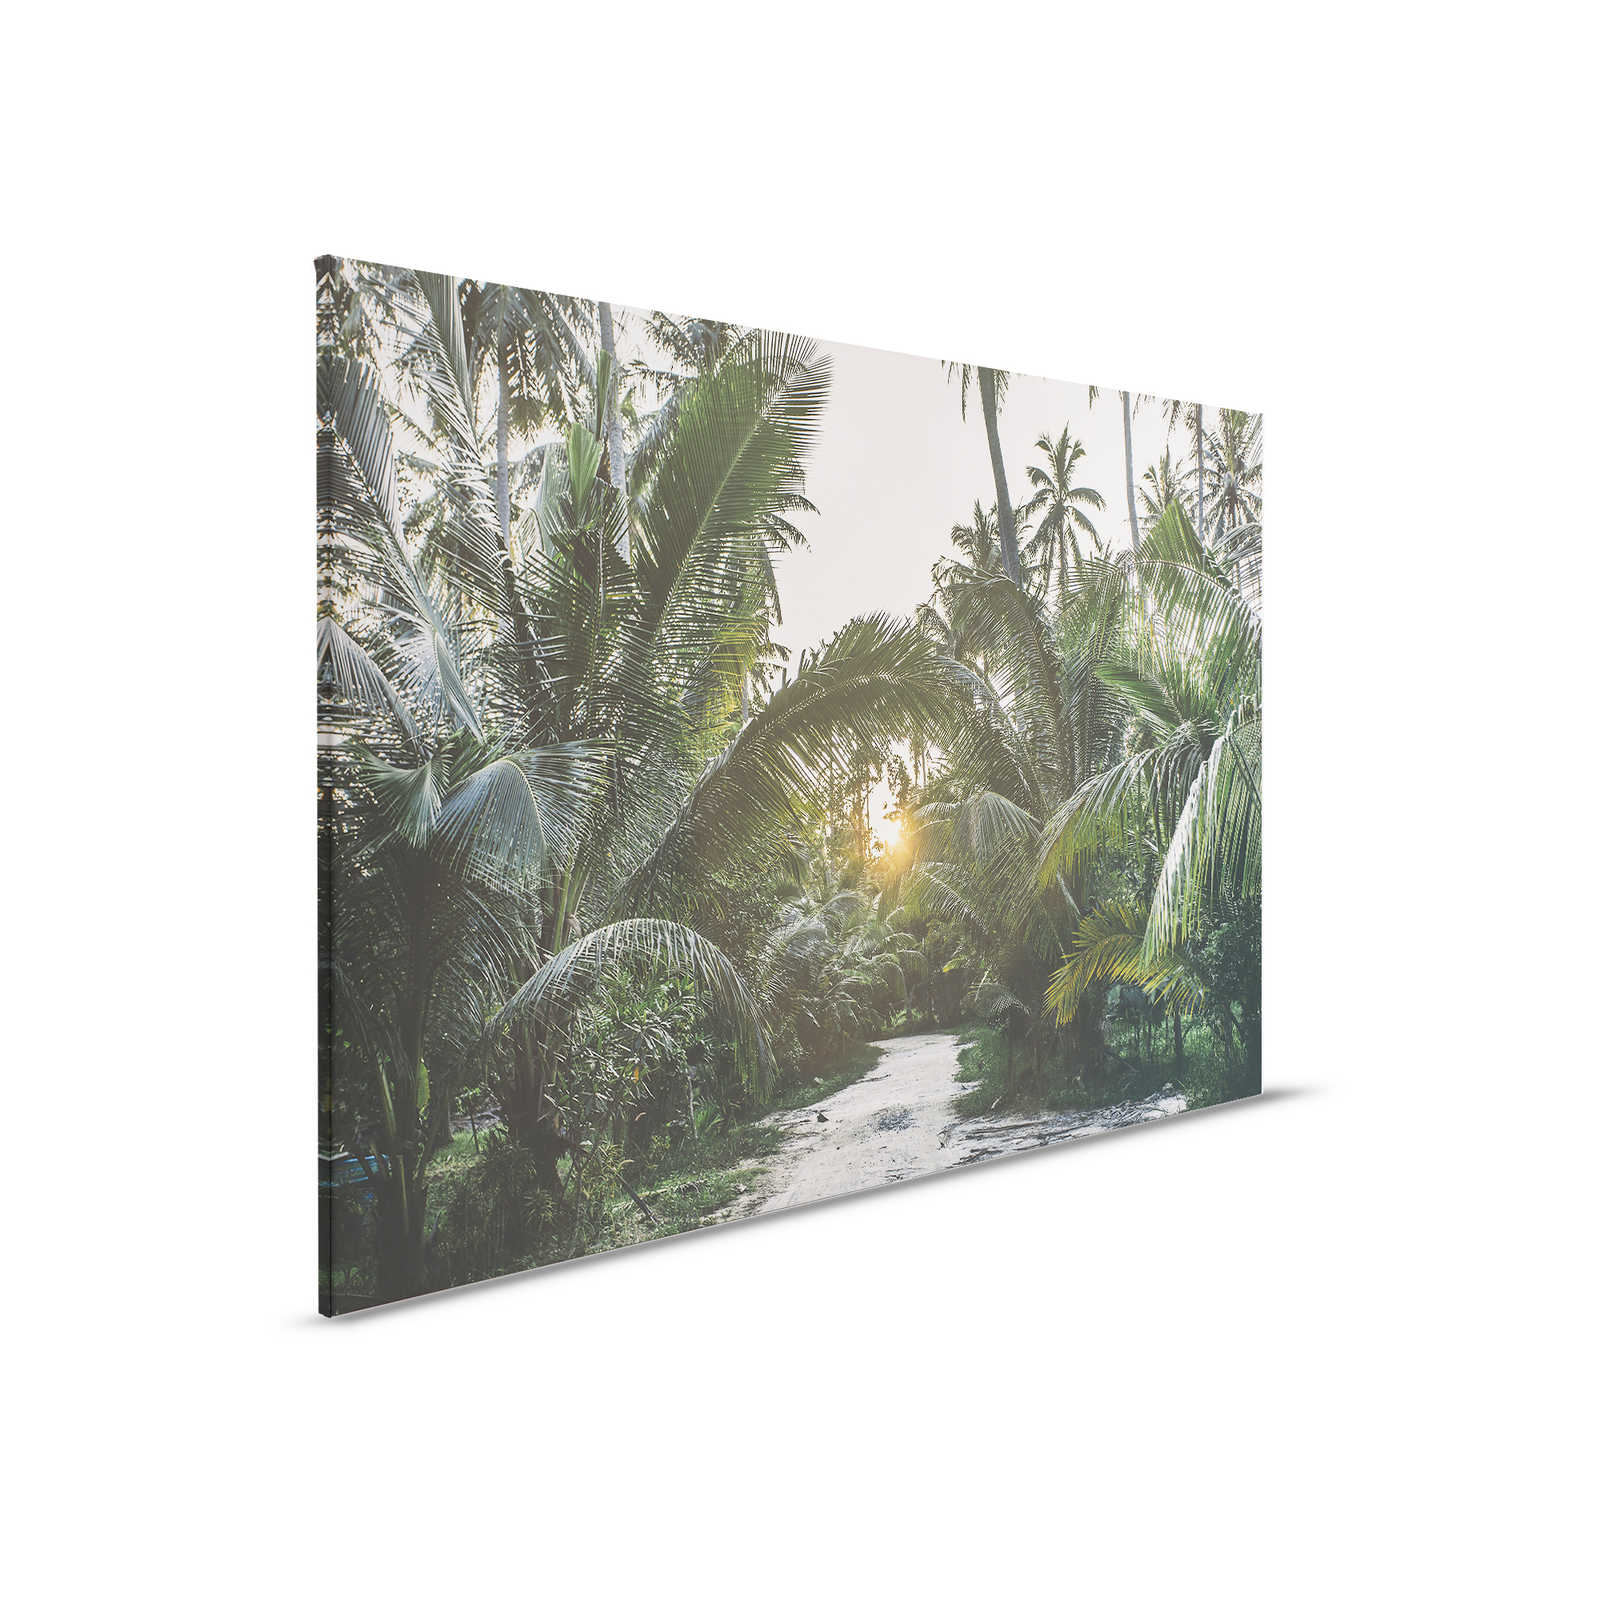 Leinwandbild mit Weg durch einen tropischen Dschungel – 0,90 m x 0,60 m
